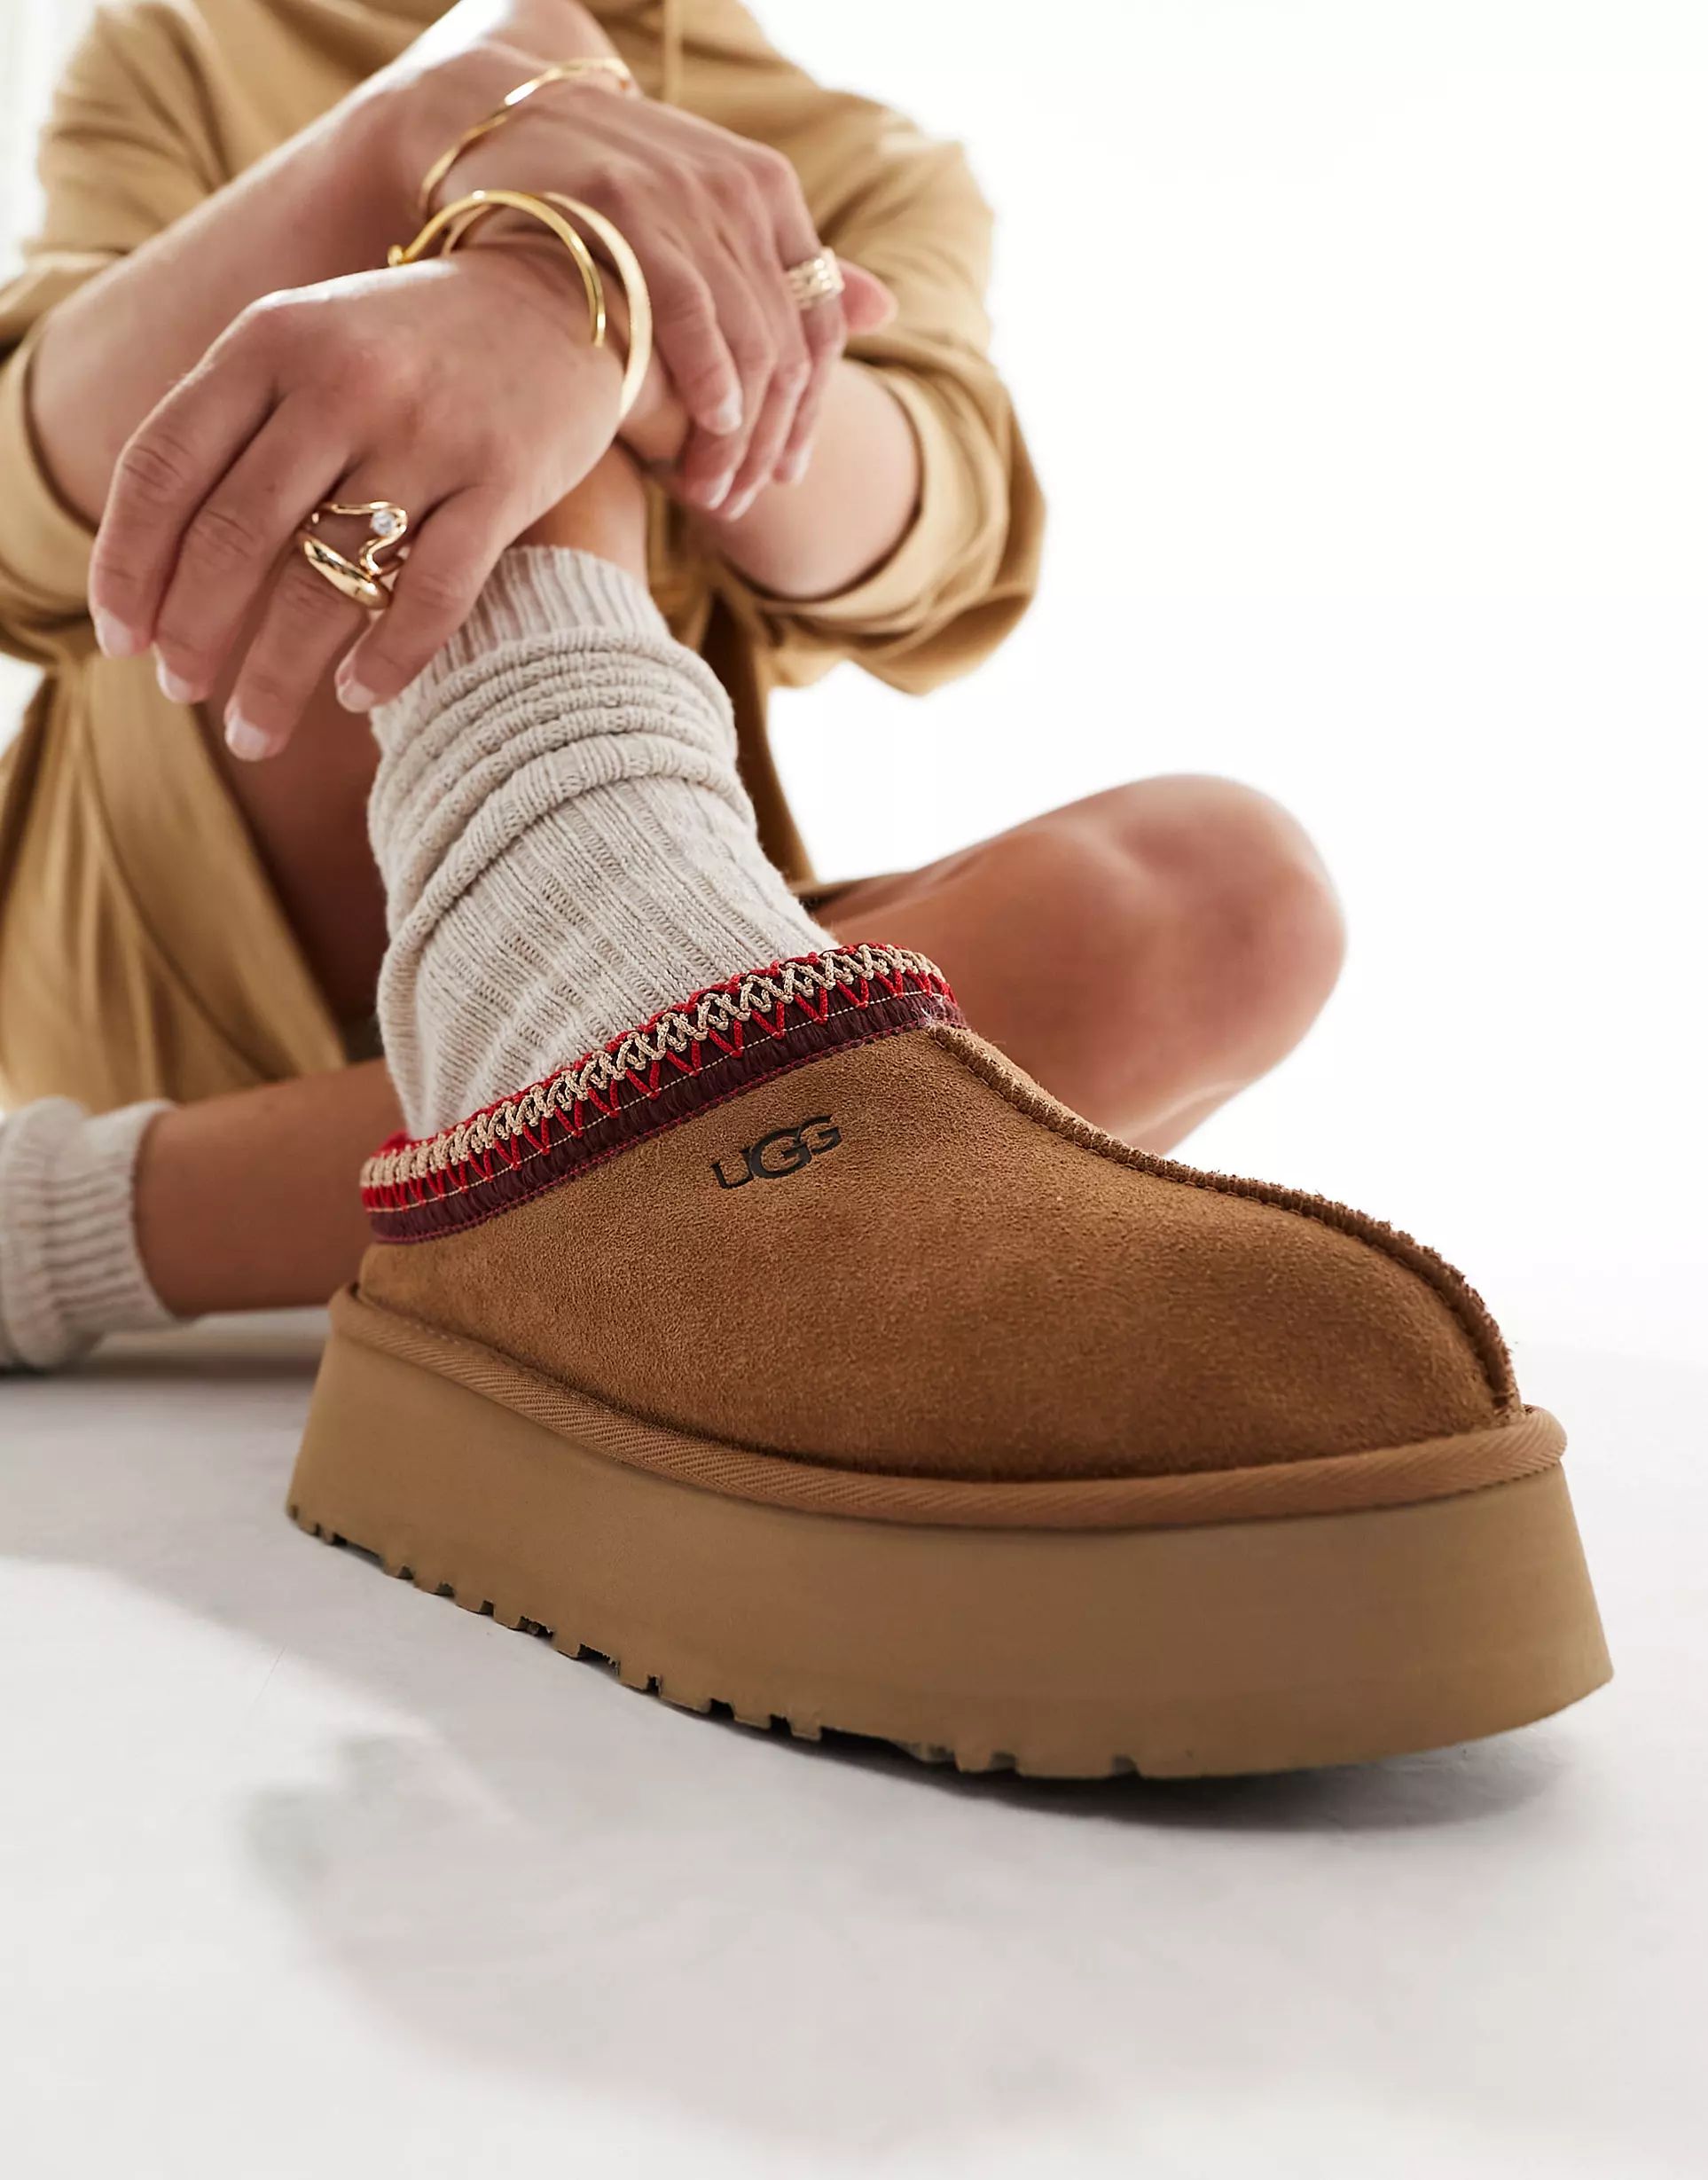 UGG Tazz shearling lined platform shoes in chestnut | ASOS | ASOS (Global)